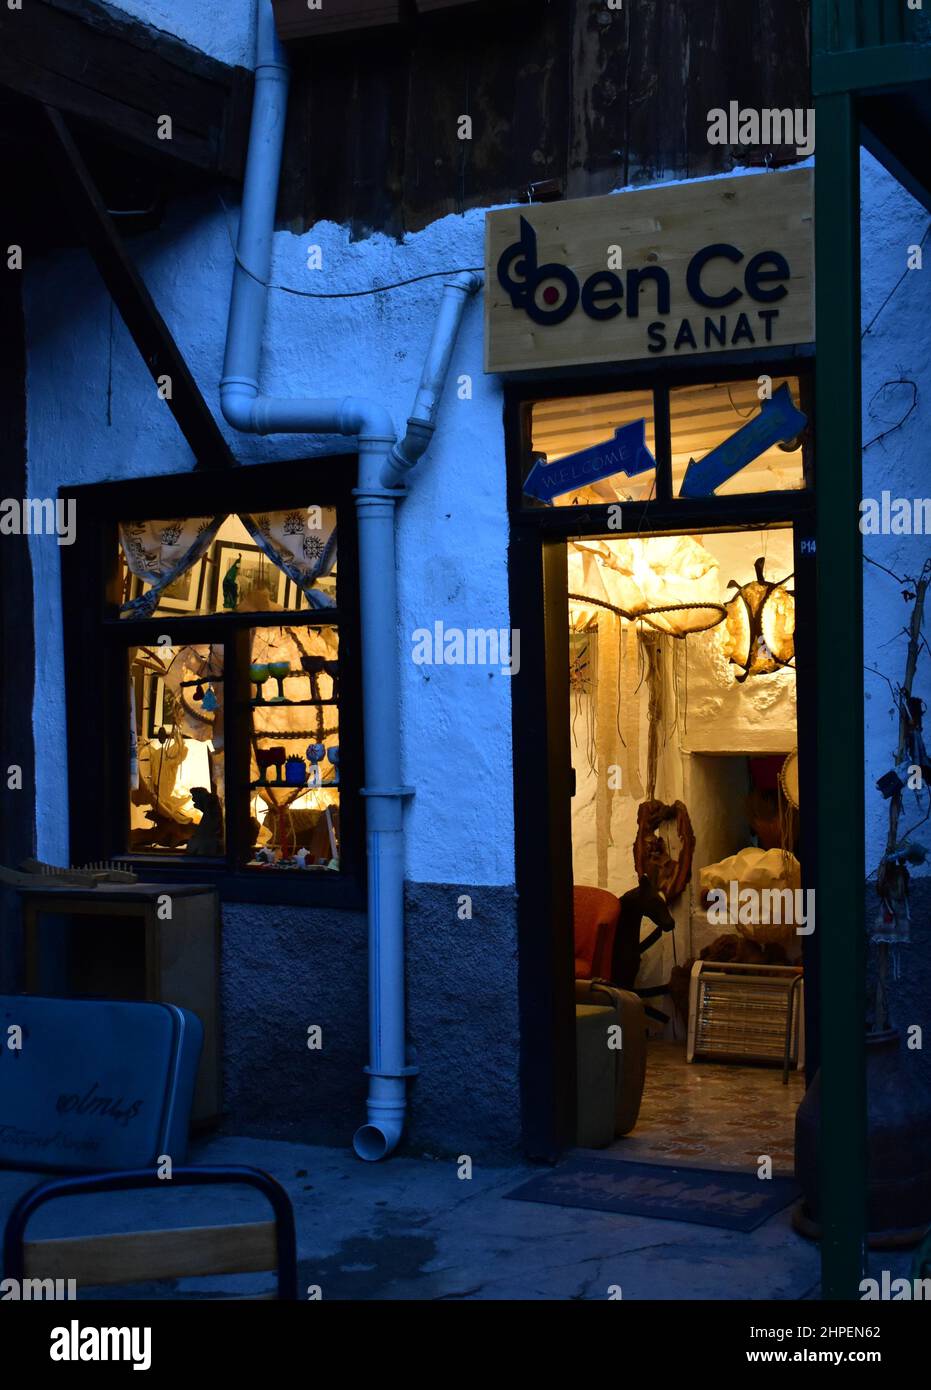 Soirée dans la vieille ville d'Ankara - fenêtres éclairées d'un magasin d'artiste dans la cour d'un « Hane » ottoman Banque D'Images